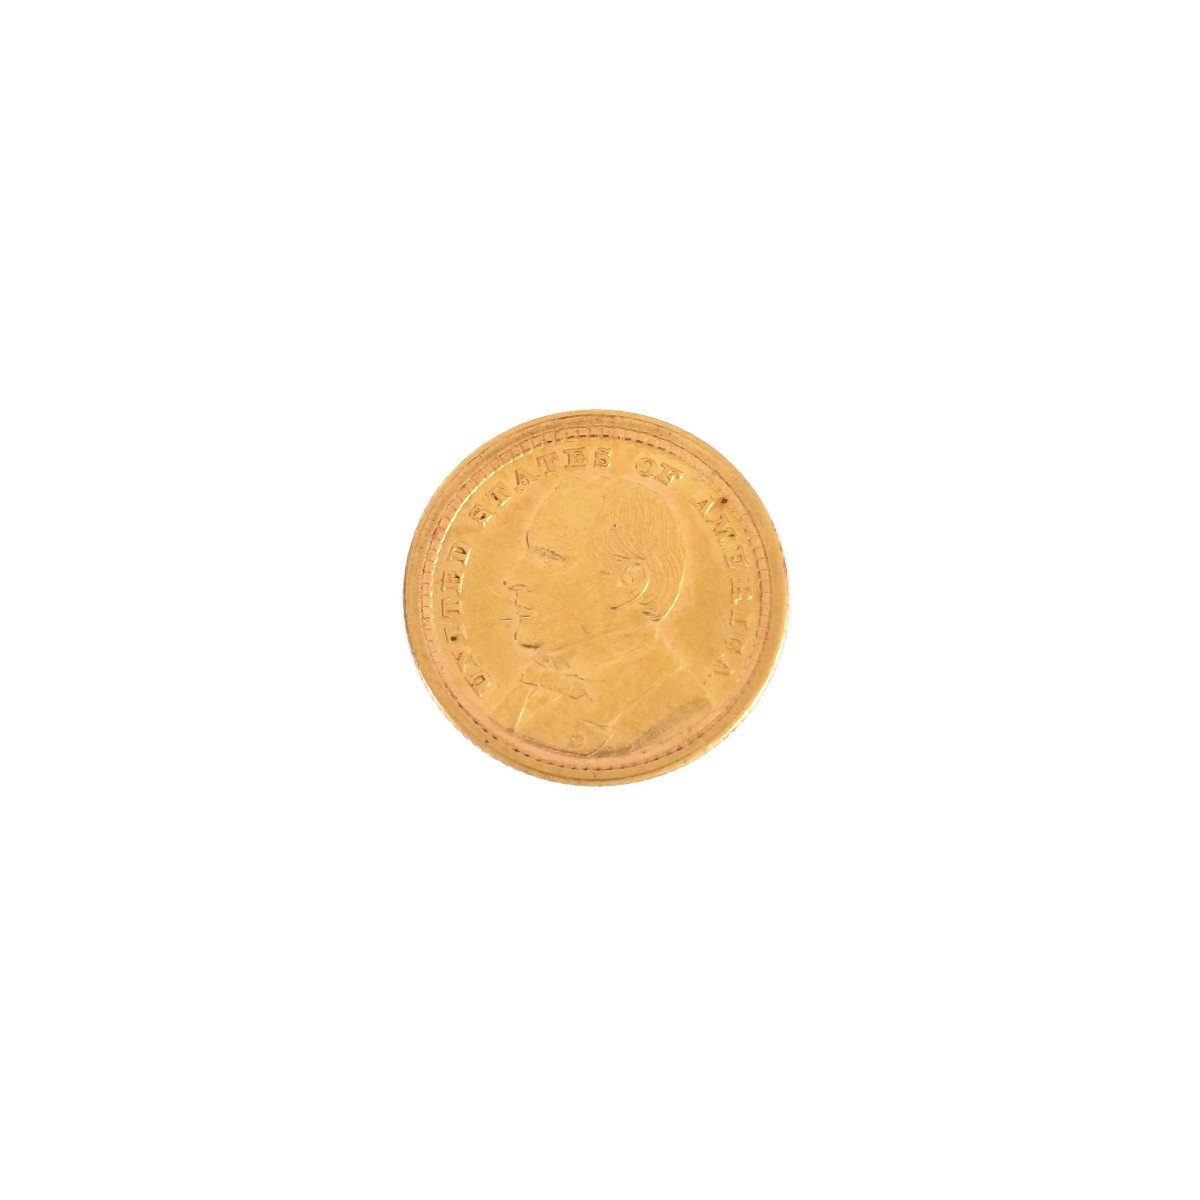 1903 US Gold McKinley $1